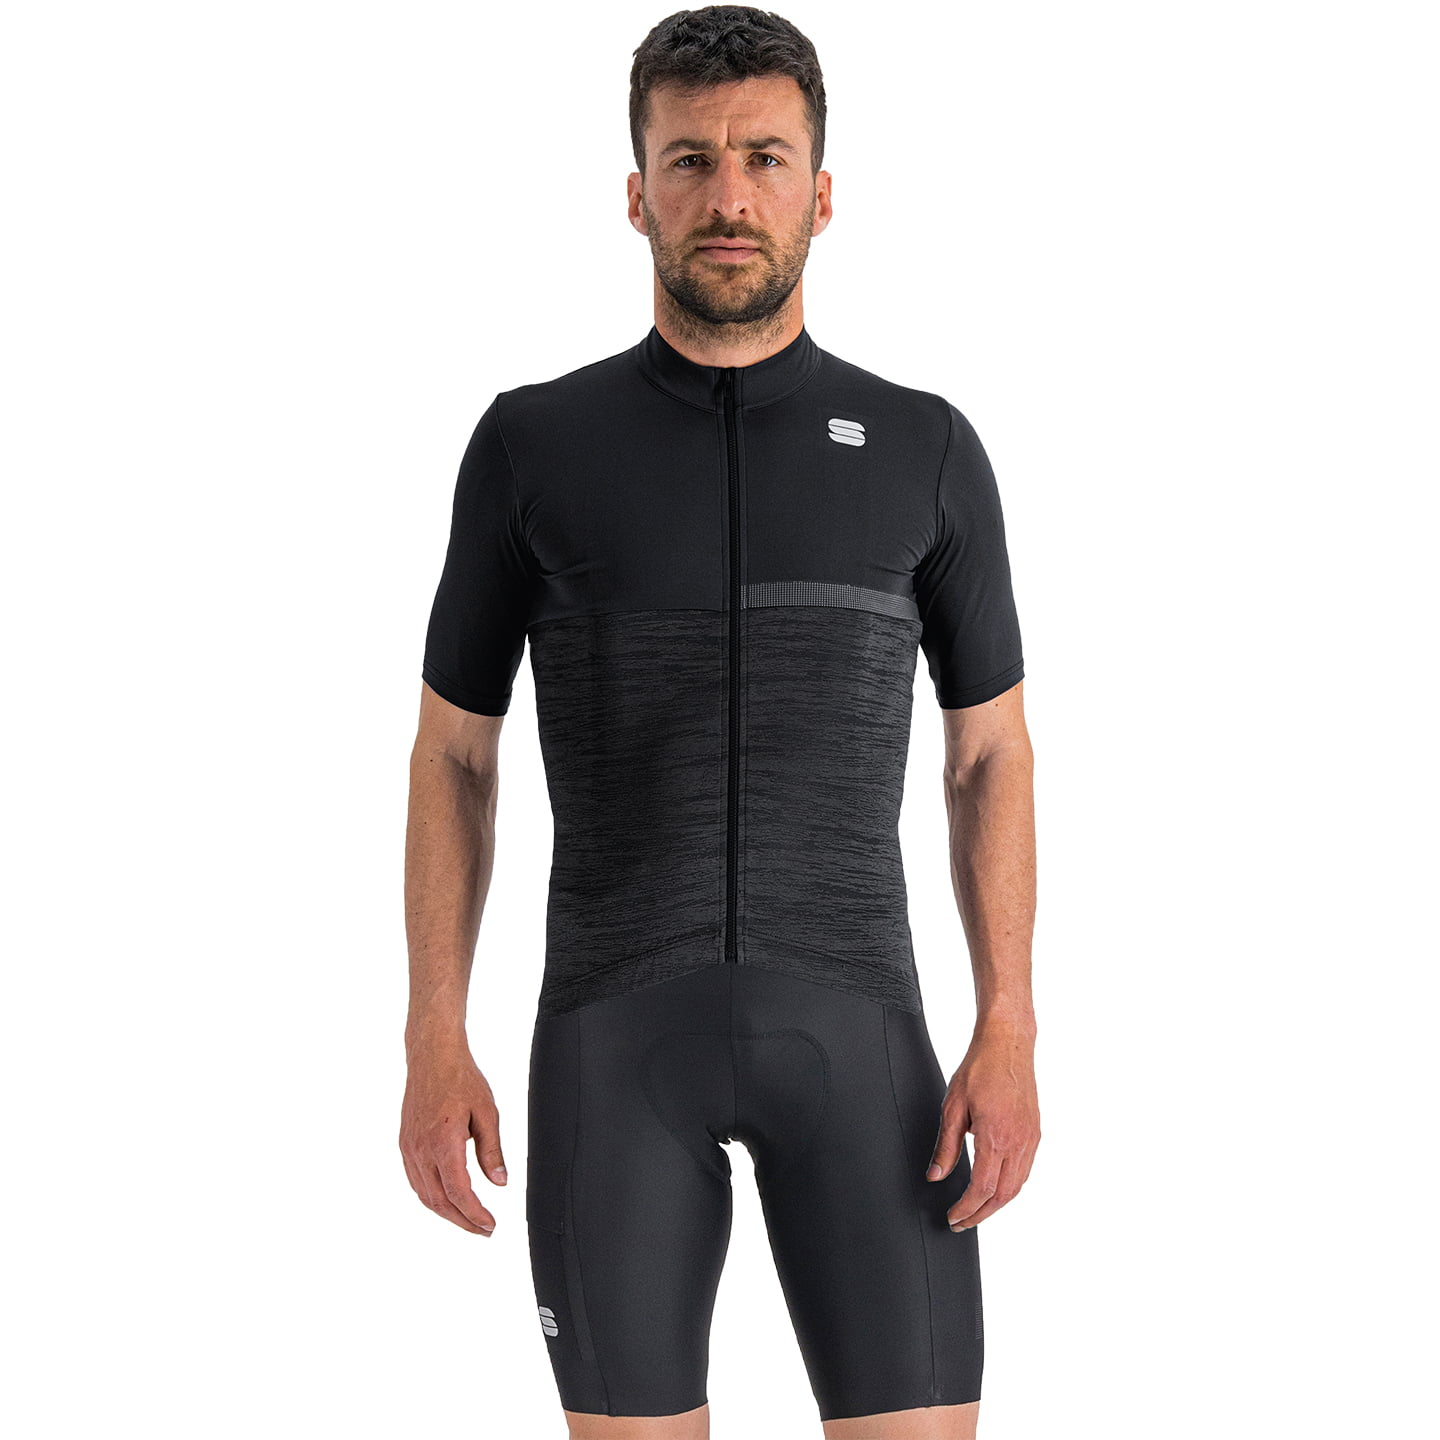 SPORTFUL Giara Set (cycling jersey + cycling shorts), for men